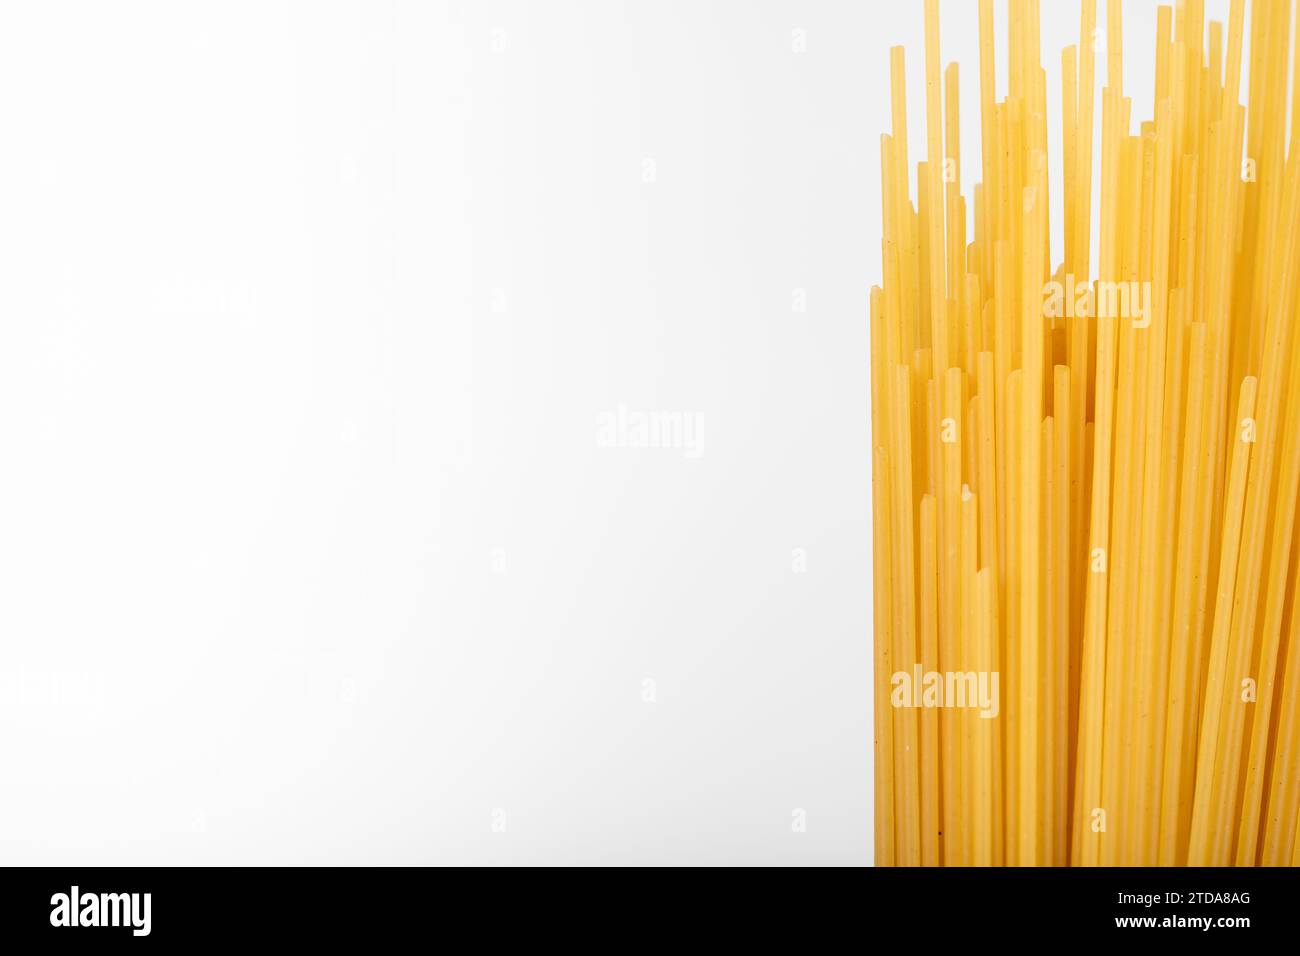 Ungekochte Spaghetti: Als Folienhintergrund Ein vielseitiges kulinarisches Grundnahrungsmittel für köstliche Mahlzeiten Stockfoto